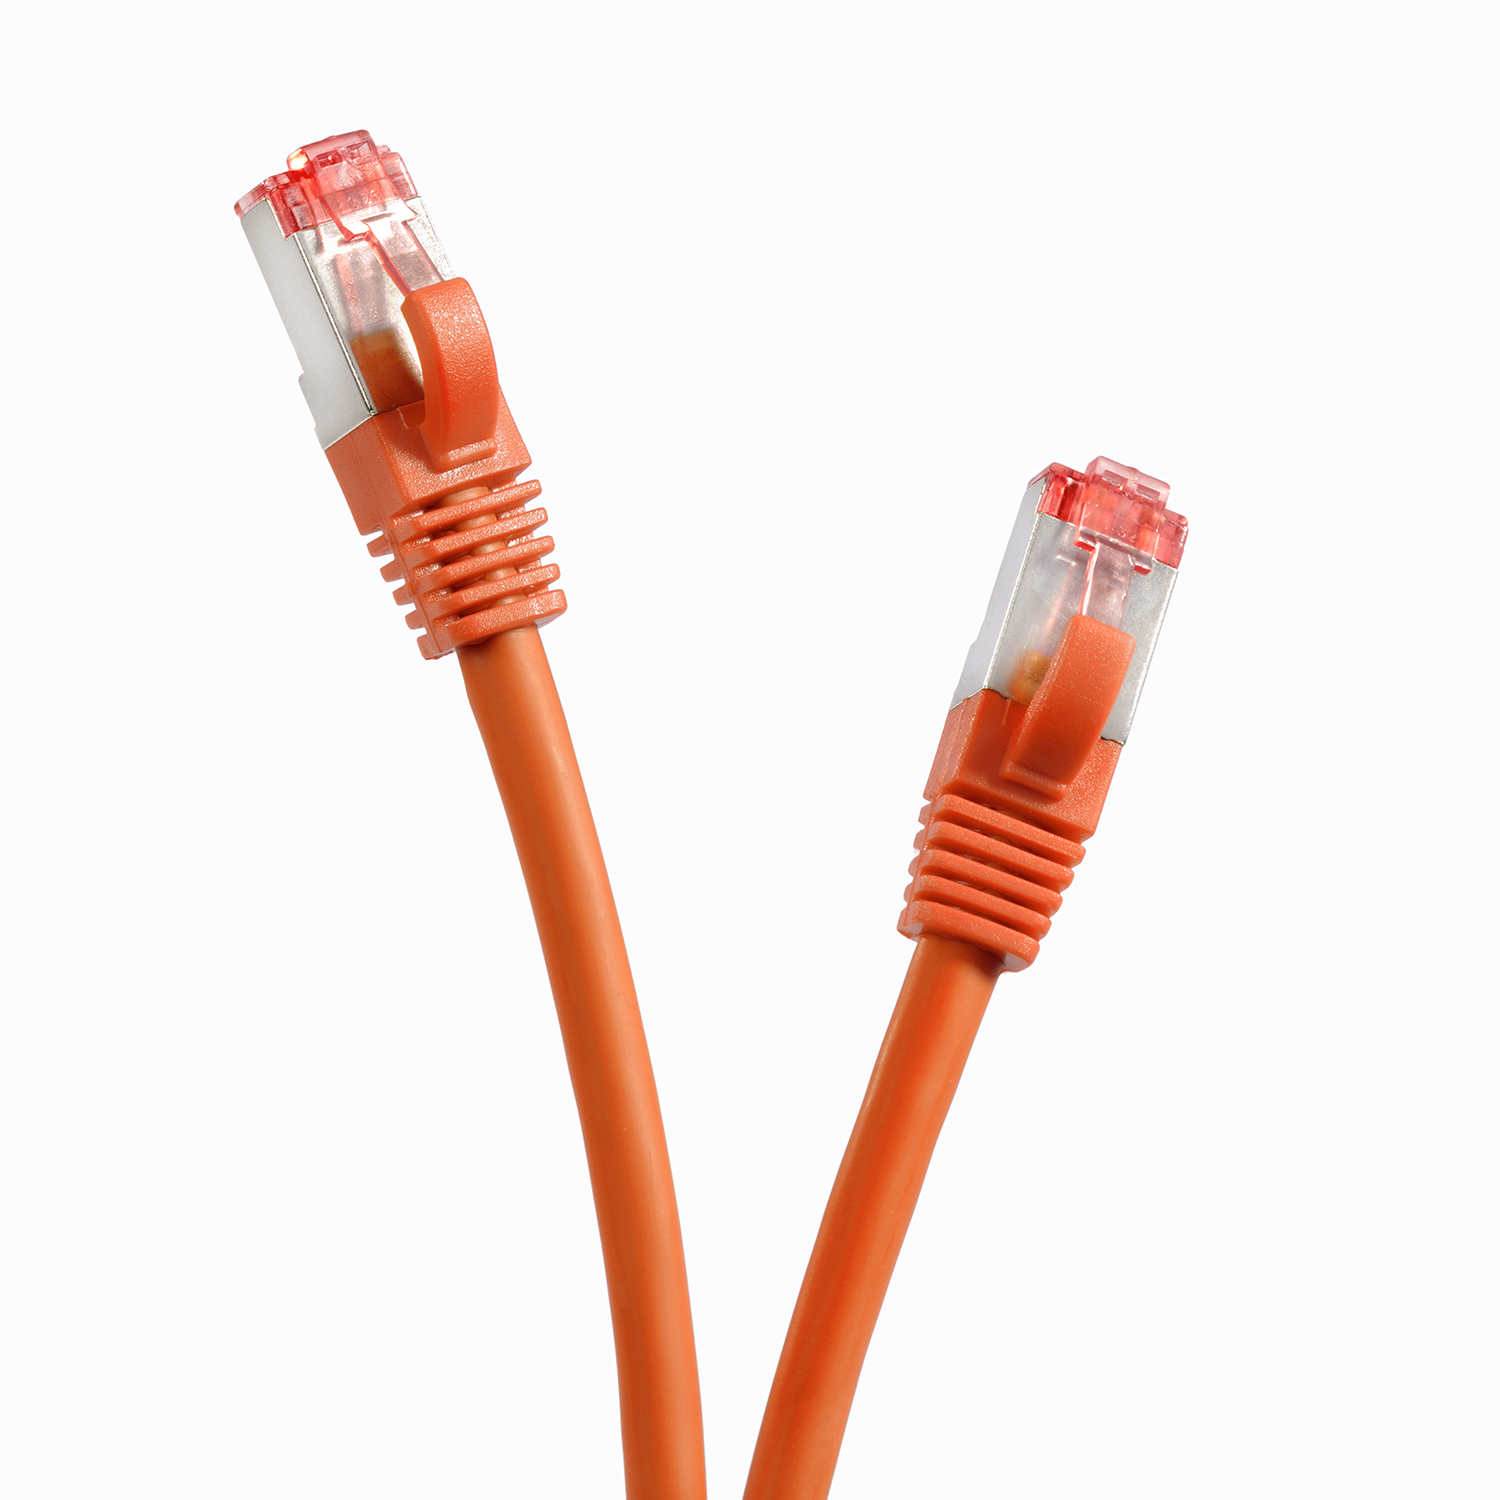 S/FTP 1000Mbit, 2 Netzwerkkabel, m orange, 5er Netzwerkkabel 2m / Pack Patchkabel TPFNET